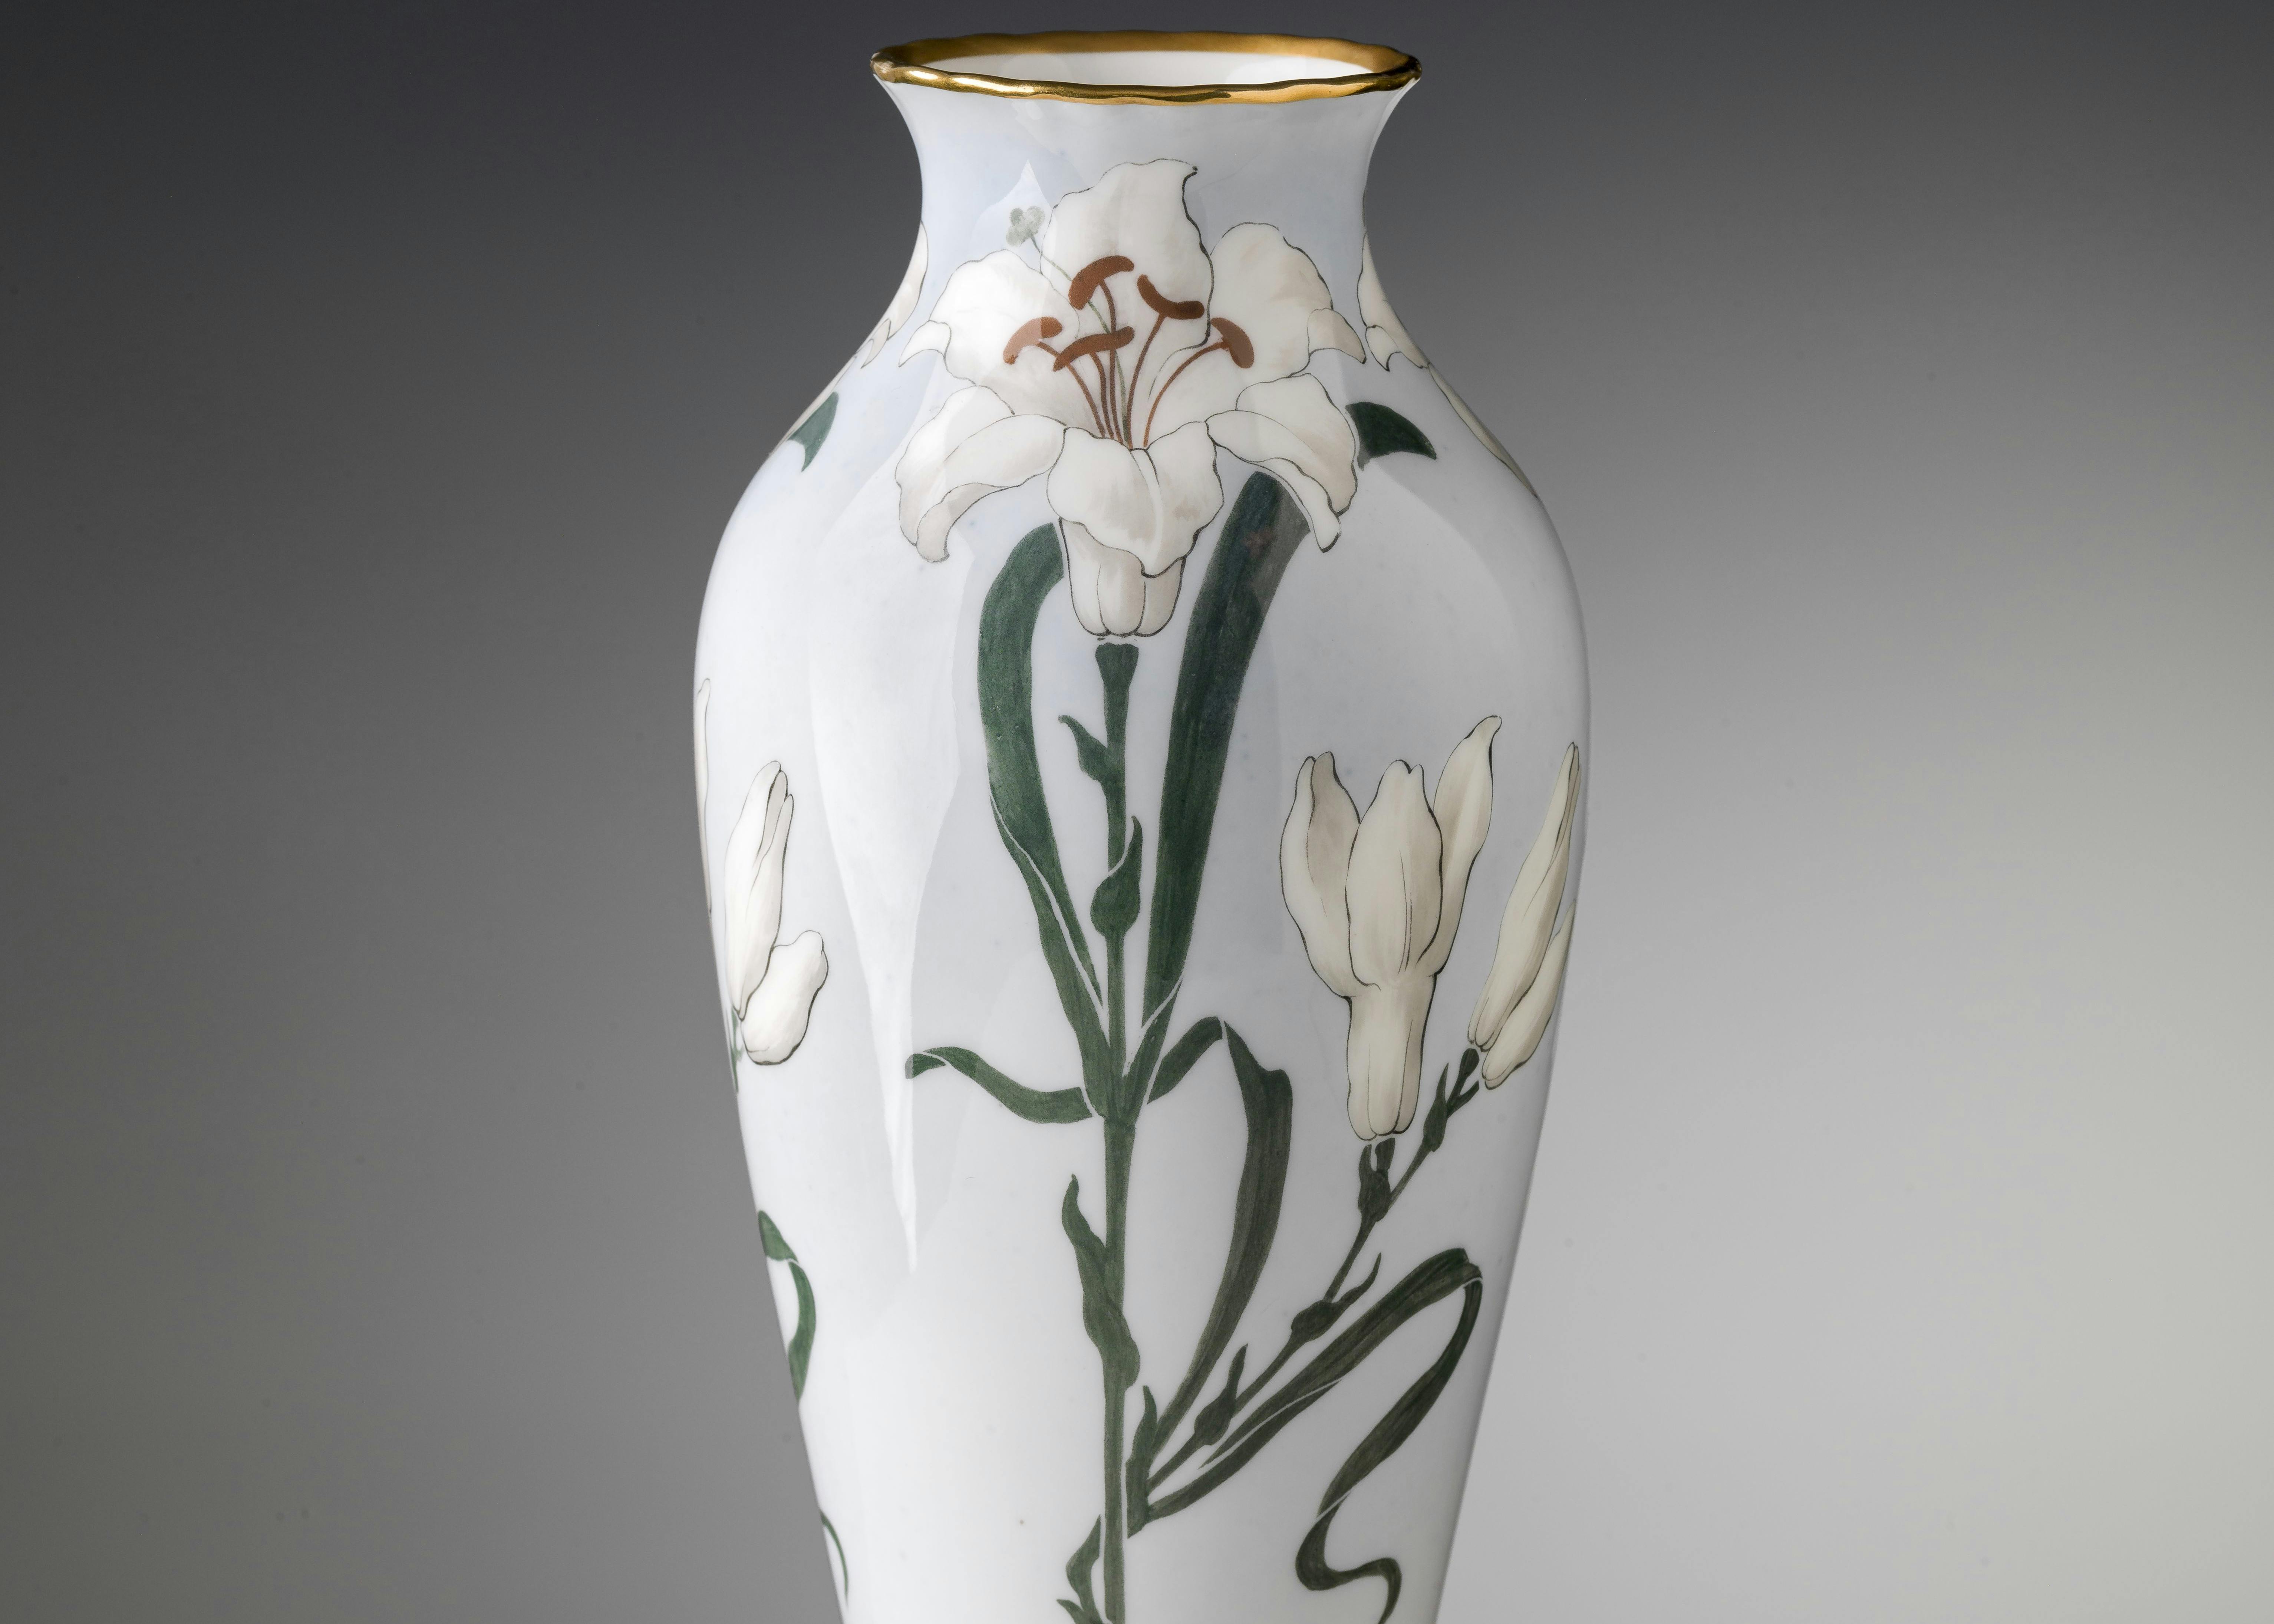 Vaso decorato con grandi gigli bianchi in stile Liberty